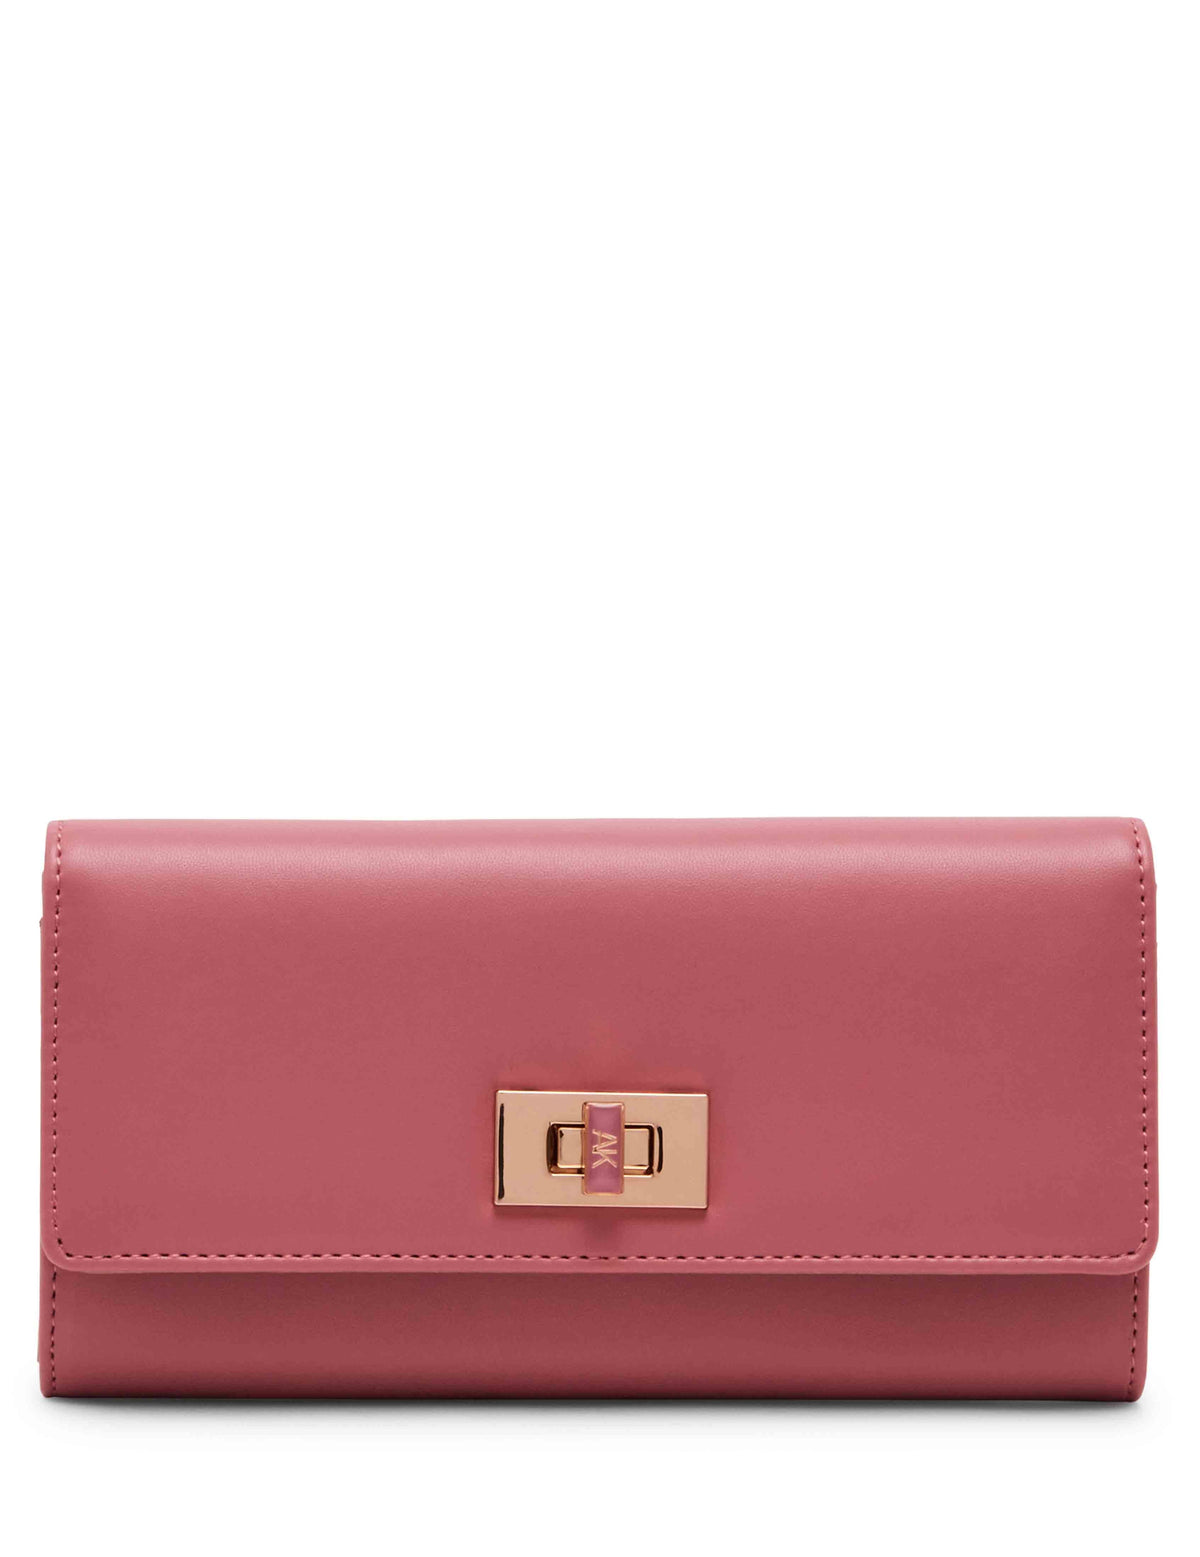 Anne Klein Vintage Pink Large Flap Wallet With Enamel Turn Lock